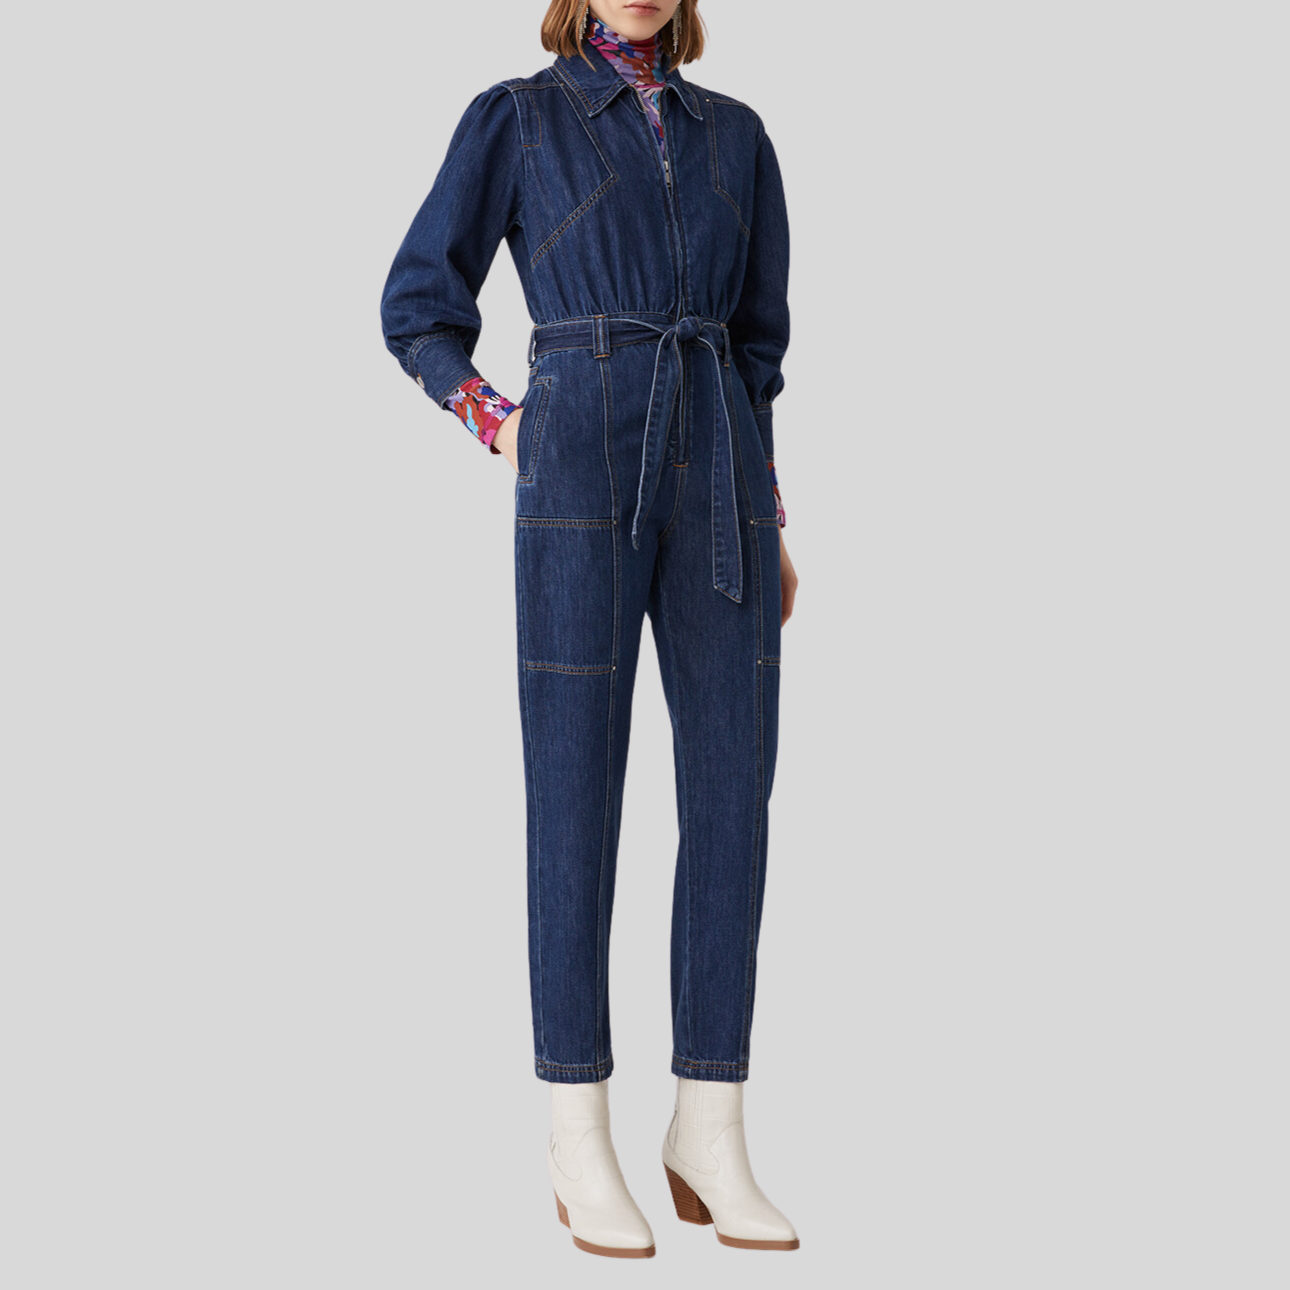 Gotstyle Fashion - Suncoo Jumpsuits Denim Front Zip Jumpsuit - Blue